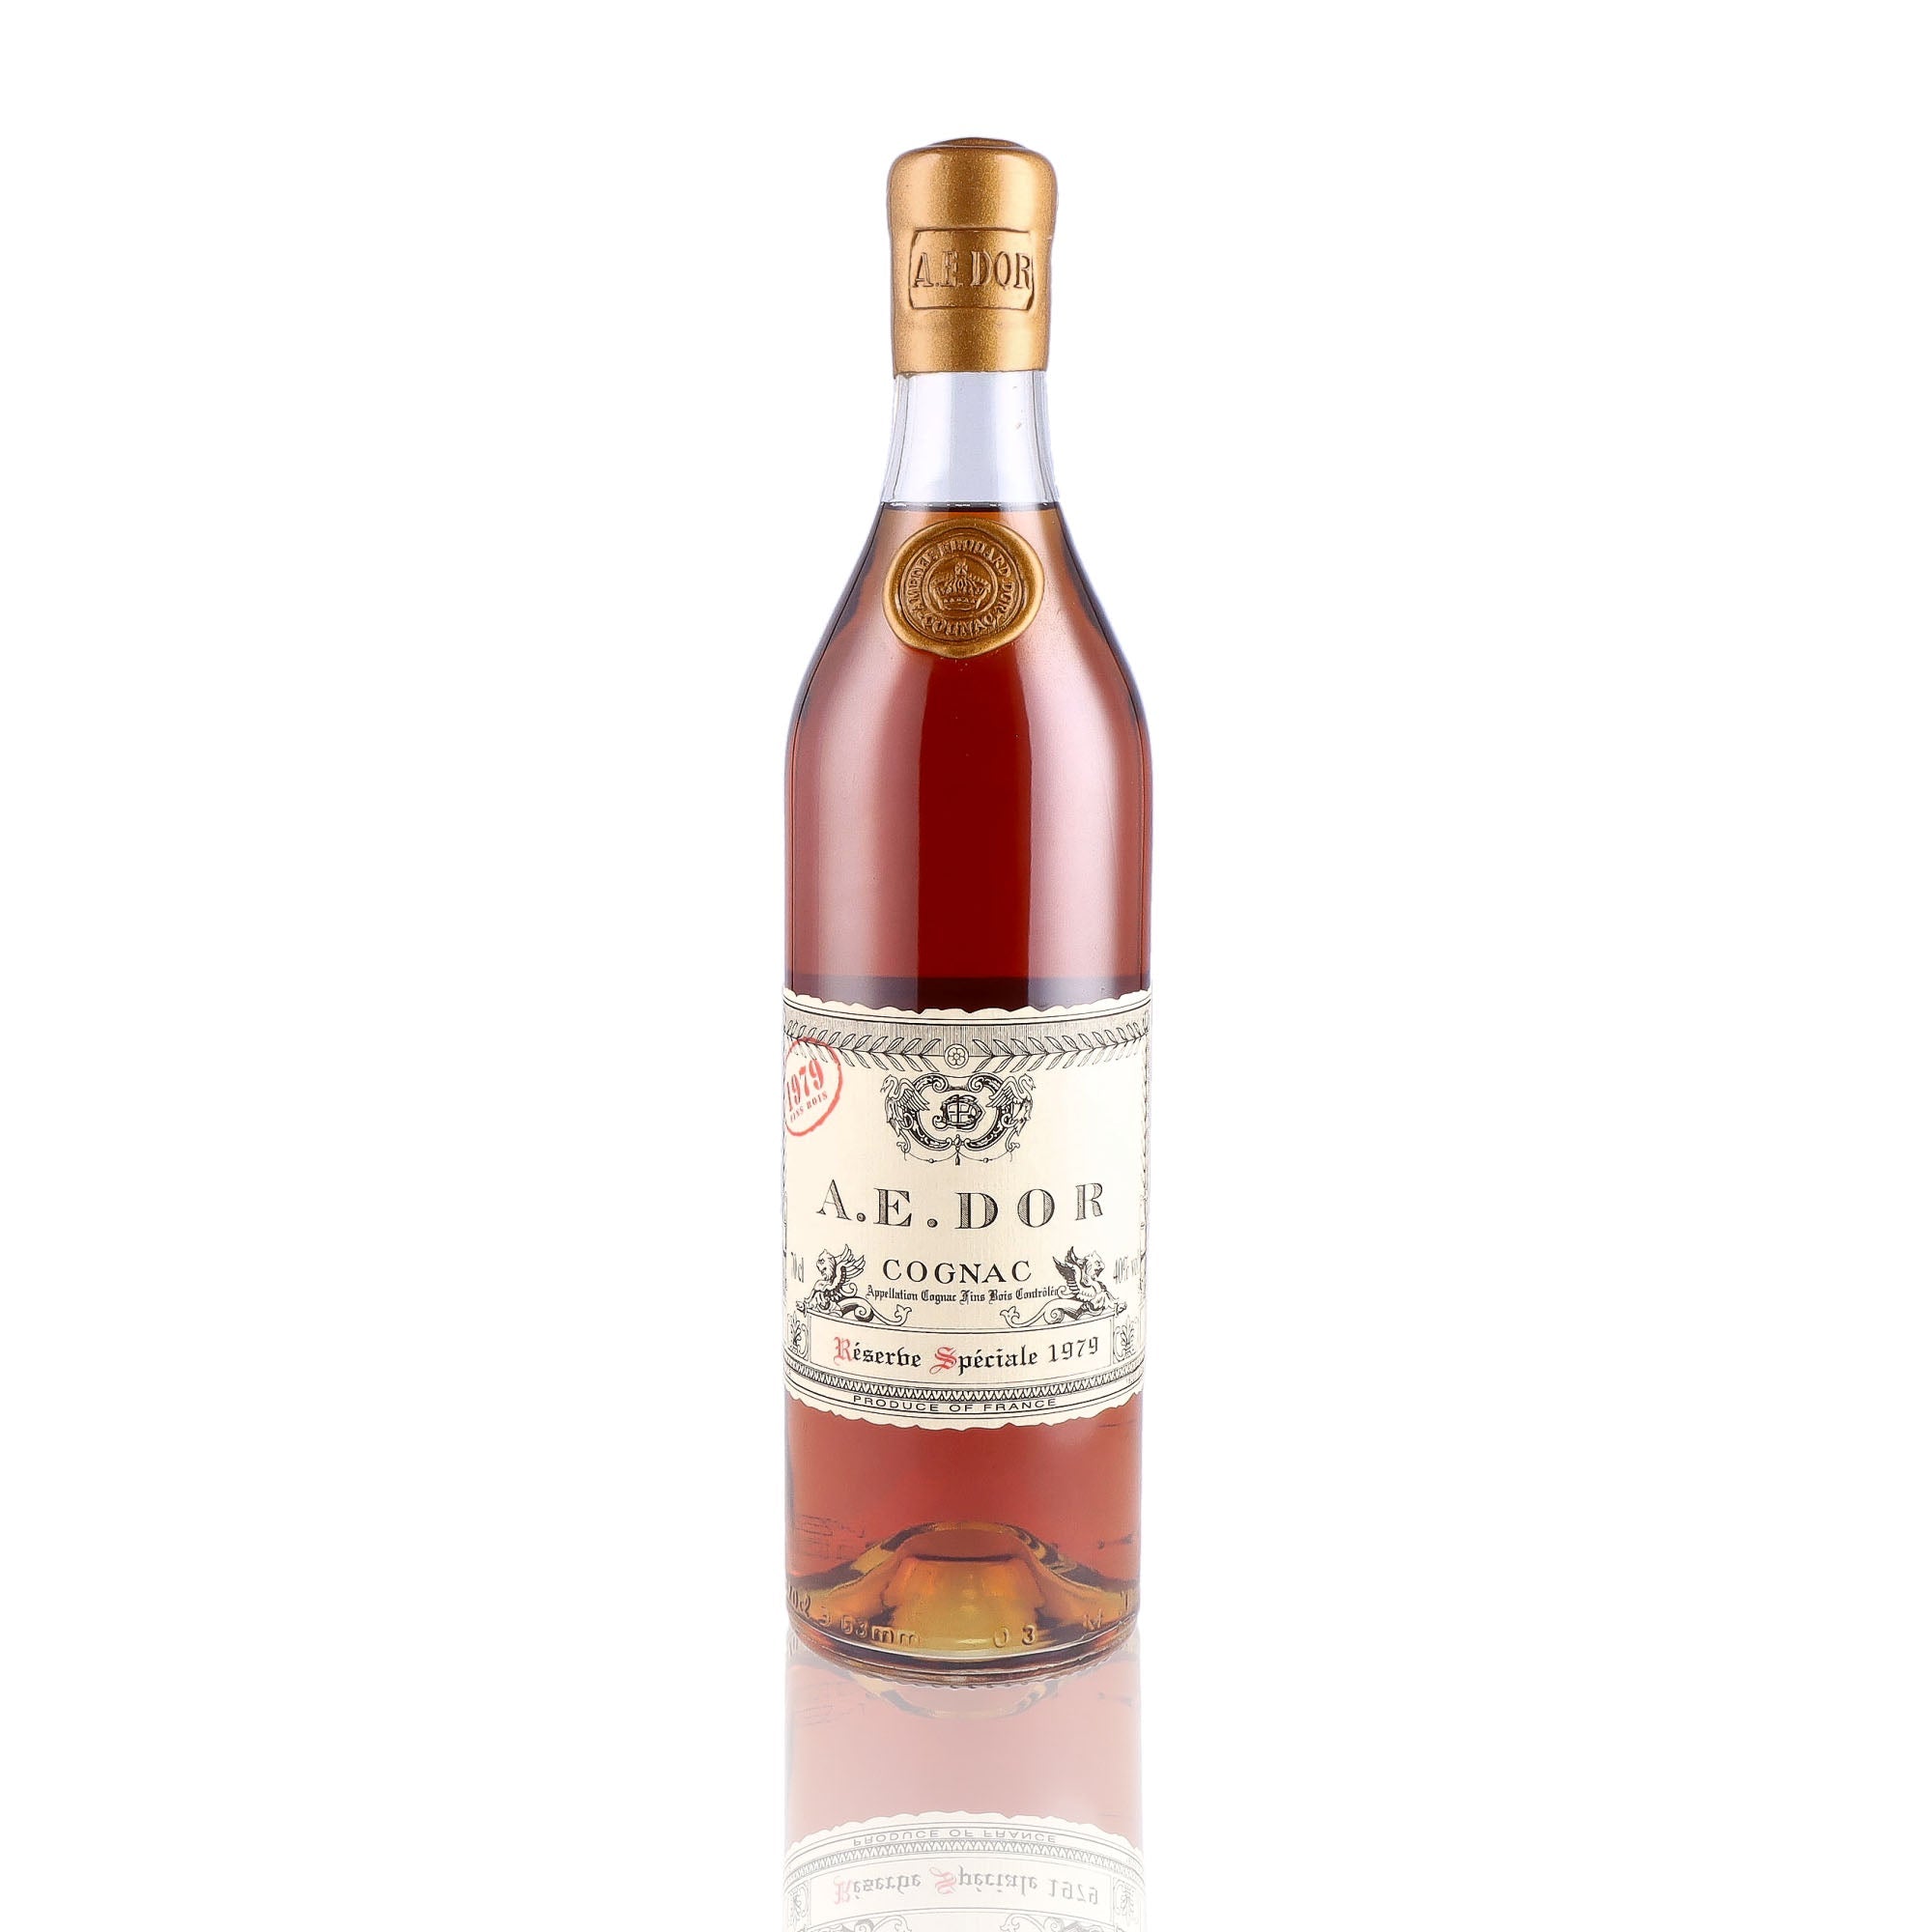 Une bouteille de Cognac, de la marque A.E DOR, nommée Réserve spéciale, du millésime 1979.